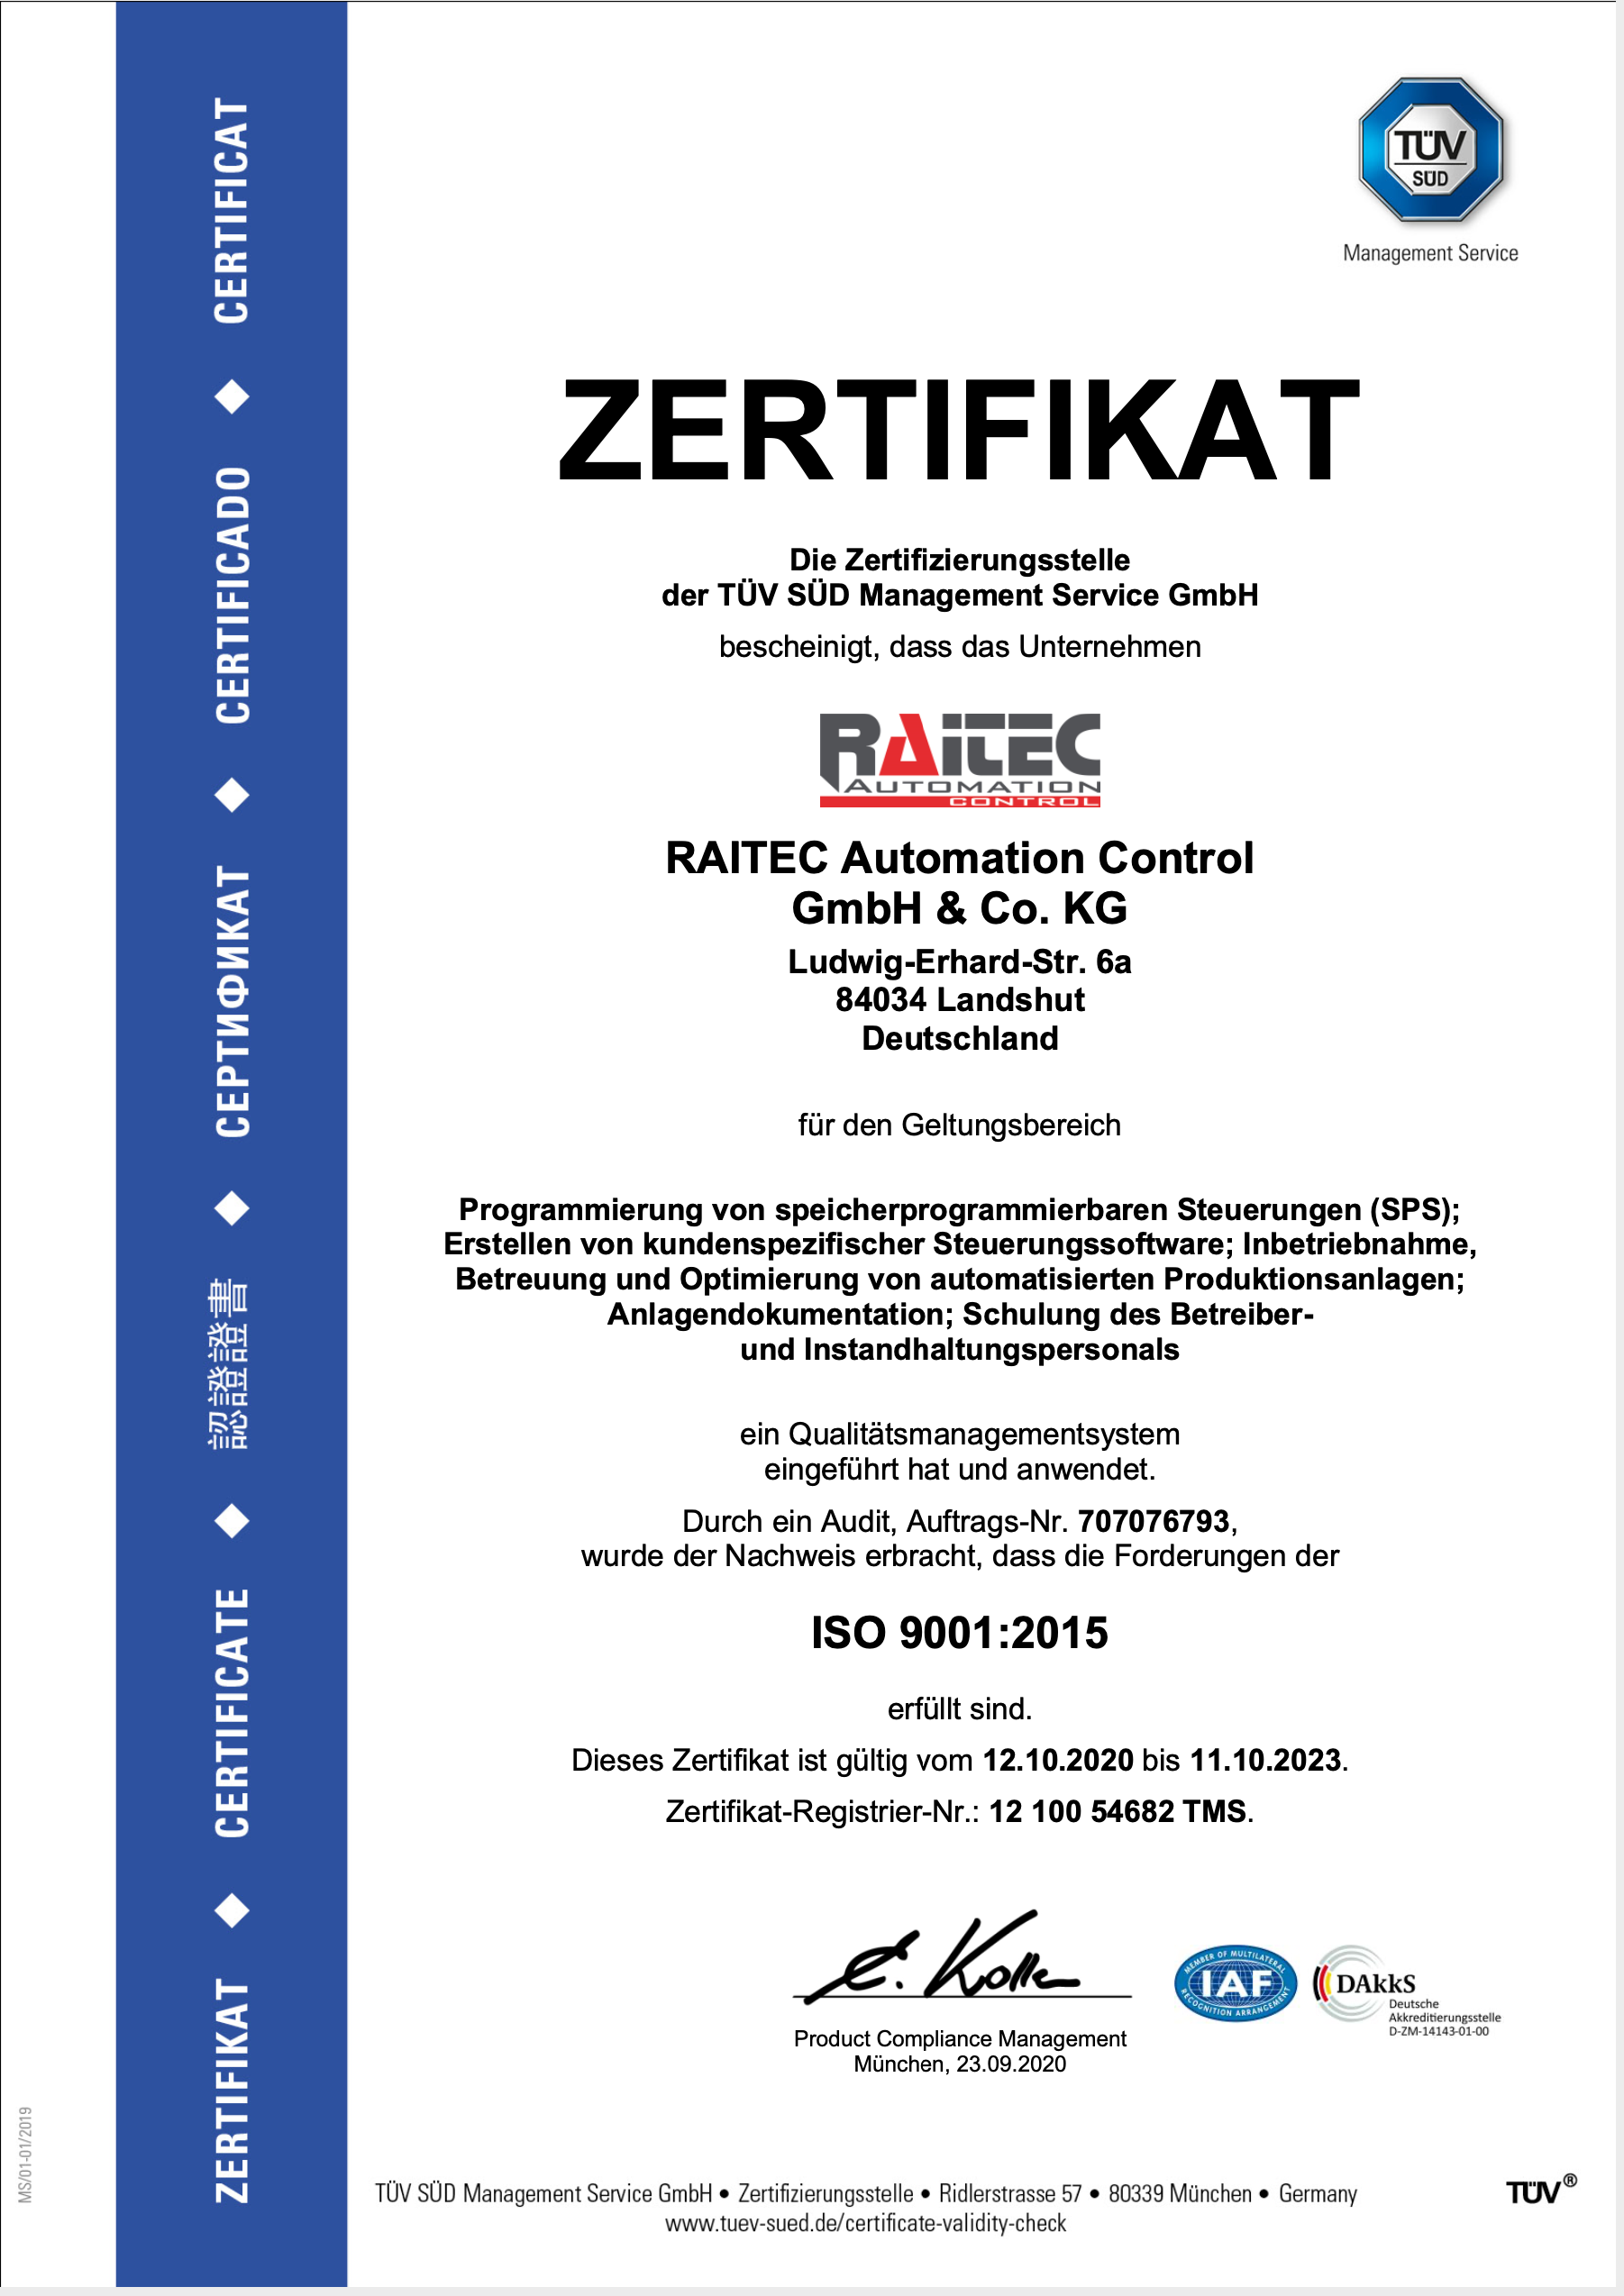 RAITEC_AUTOMATION CONTROL_GMBH_TUEV_Zertifikat_2020_de